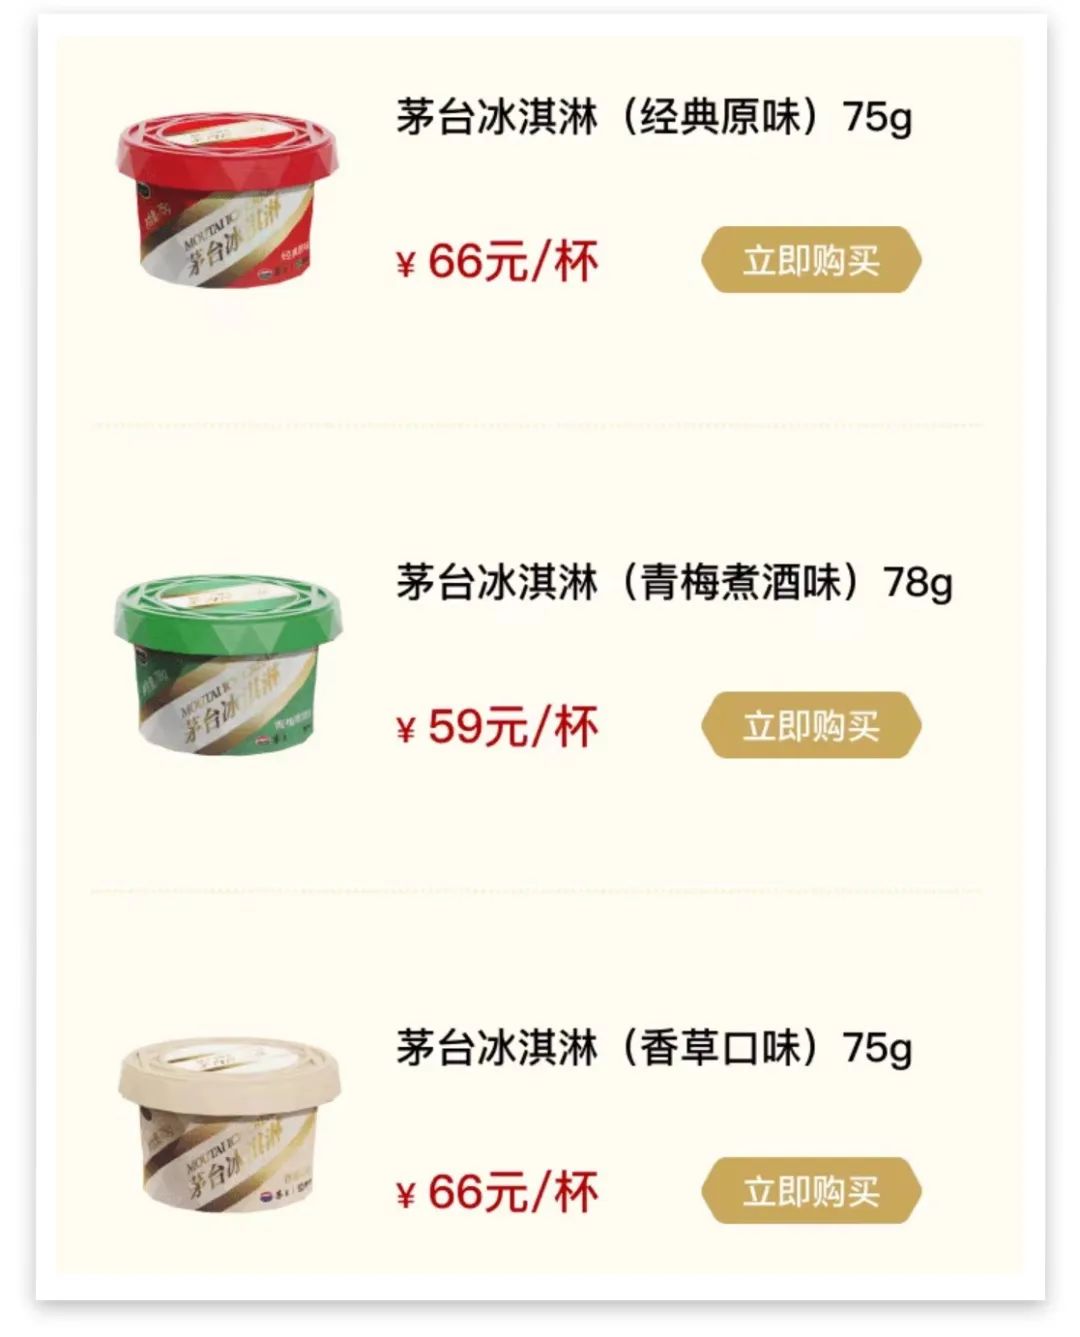 16年凤凰平台官网注册茅台冰淇淋首发迎来“开门红” 茅台酒含量约2%